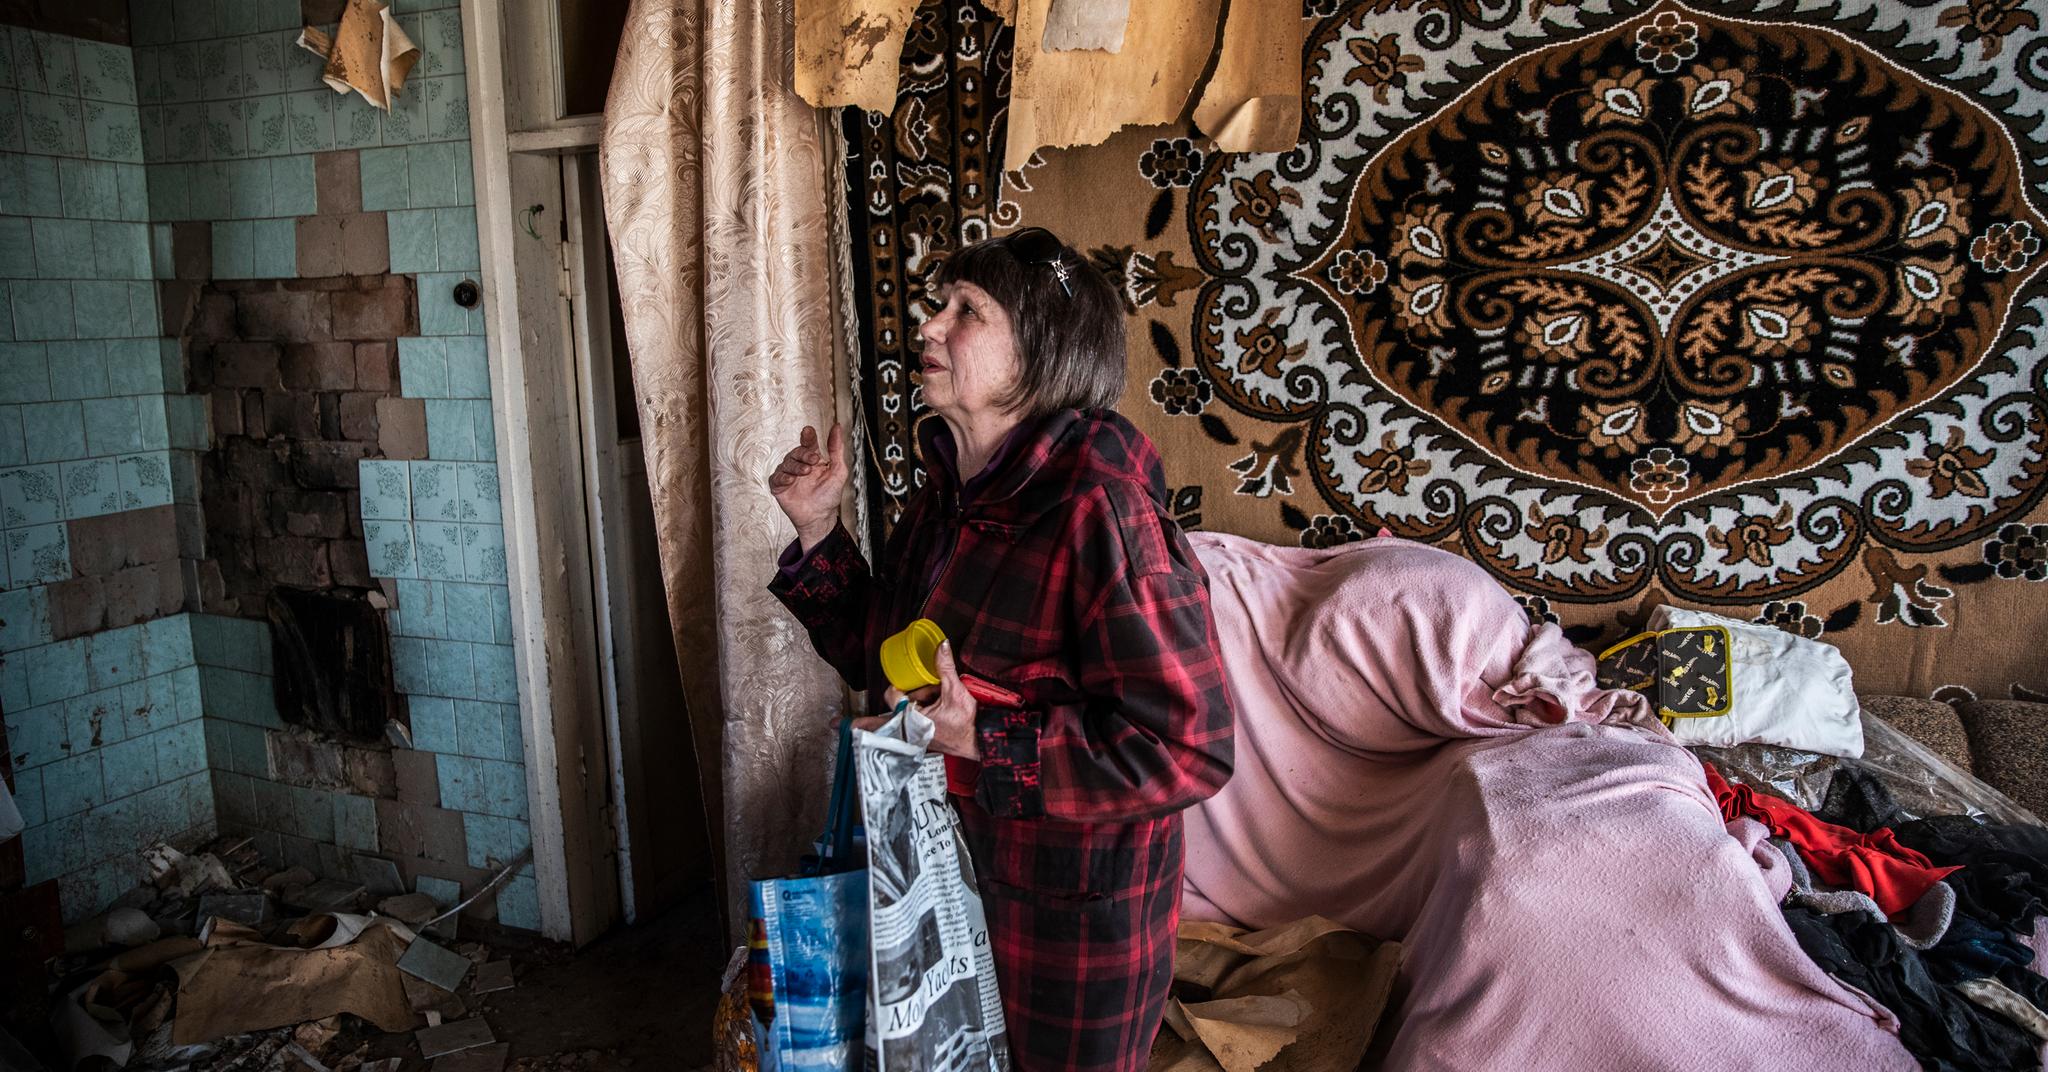 Tatiana (69) ser over skadene i barndomshjemmet hun vokste opp i. Før invasjonen bodde nevøen hennes her. Da russiske soldater kom, flyktet han med familien sin. 69-åringen ble igjen for å mate etterlatte dyr under okkupasjonen.